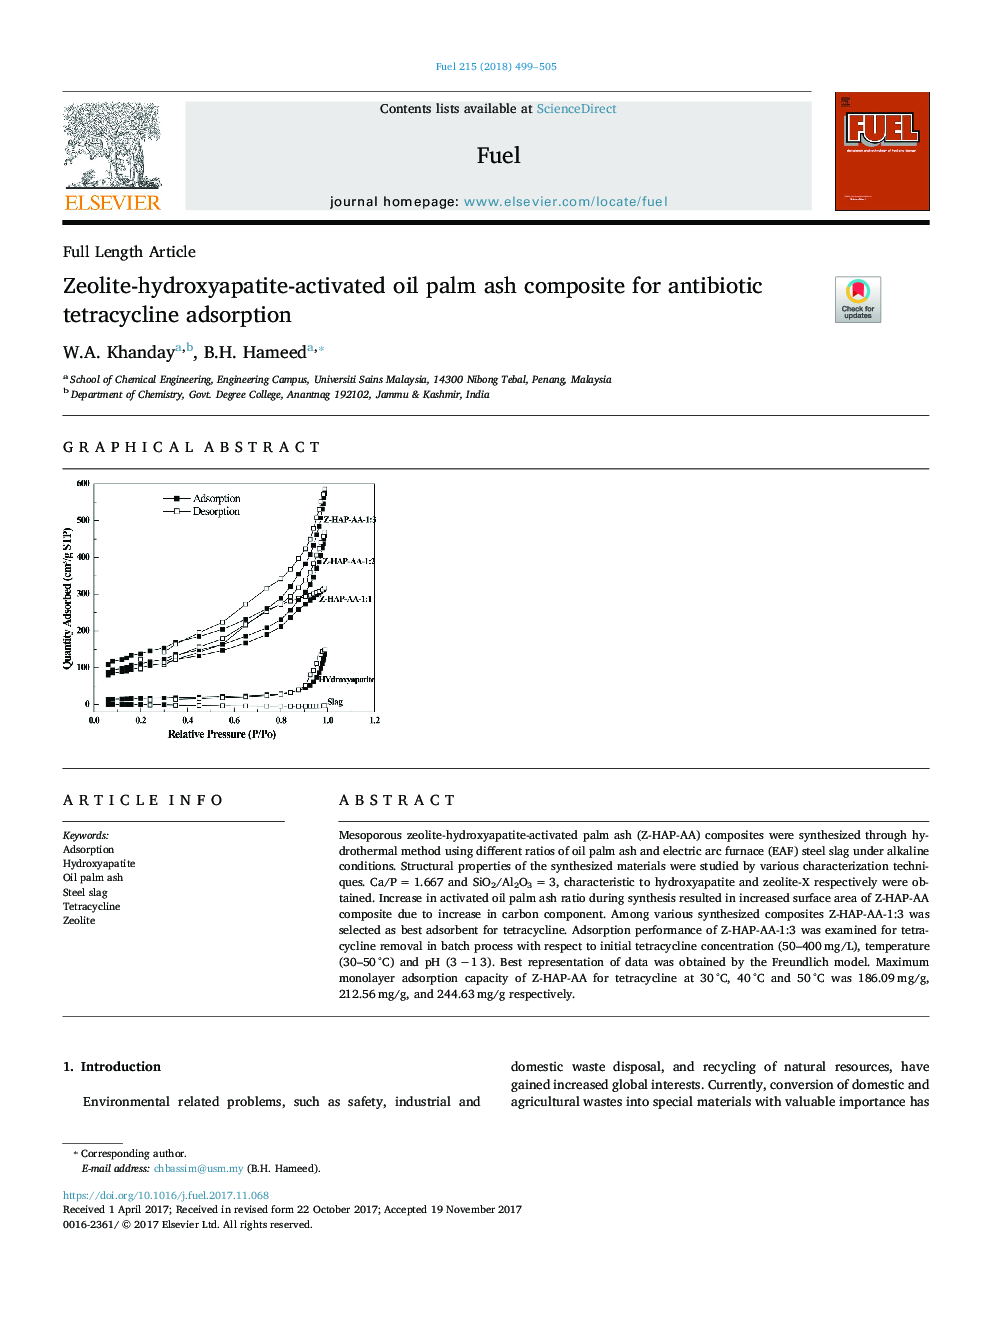 کامپوزیت خاکستر نخل روغن زئولیت-هیدروکسی آپاتیت برای جذب آنتی بیوتیک تتراسایکلین 